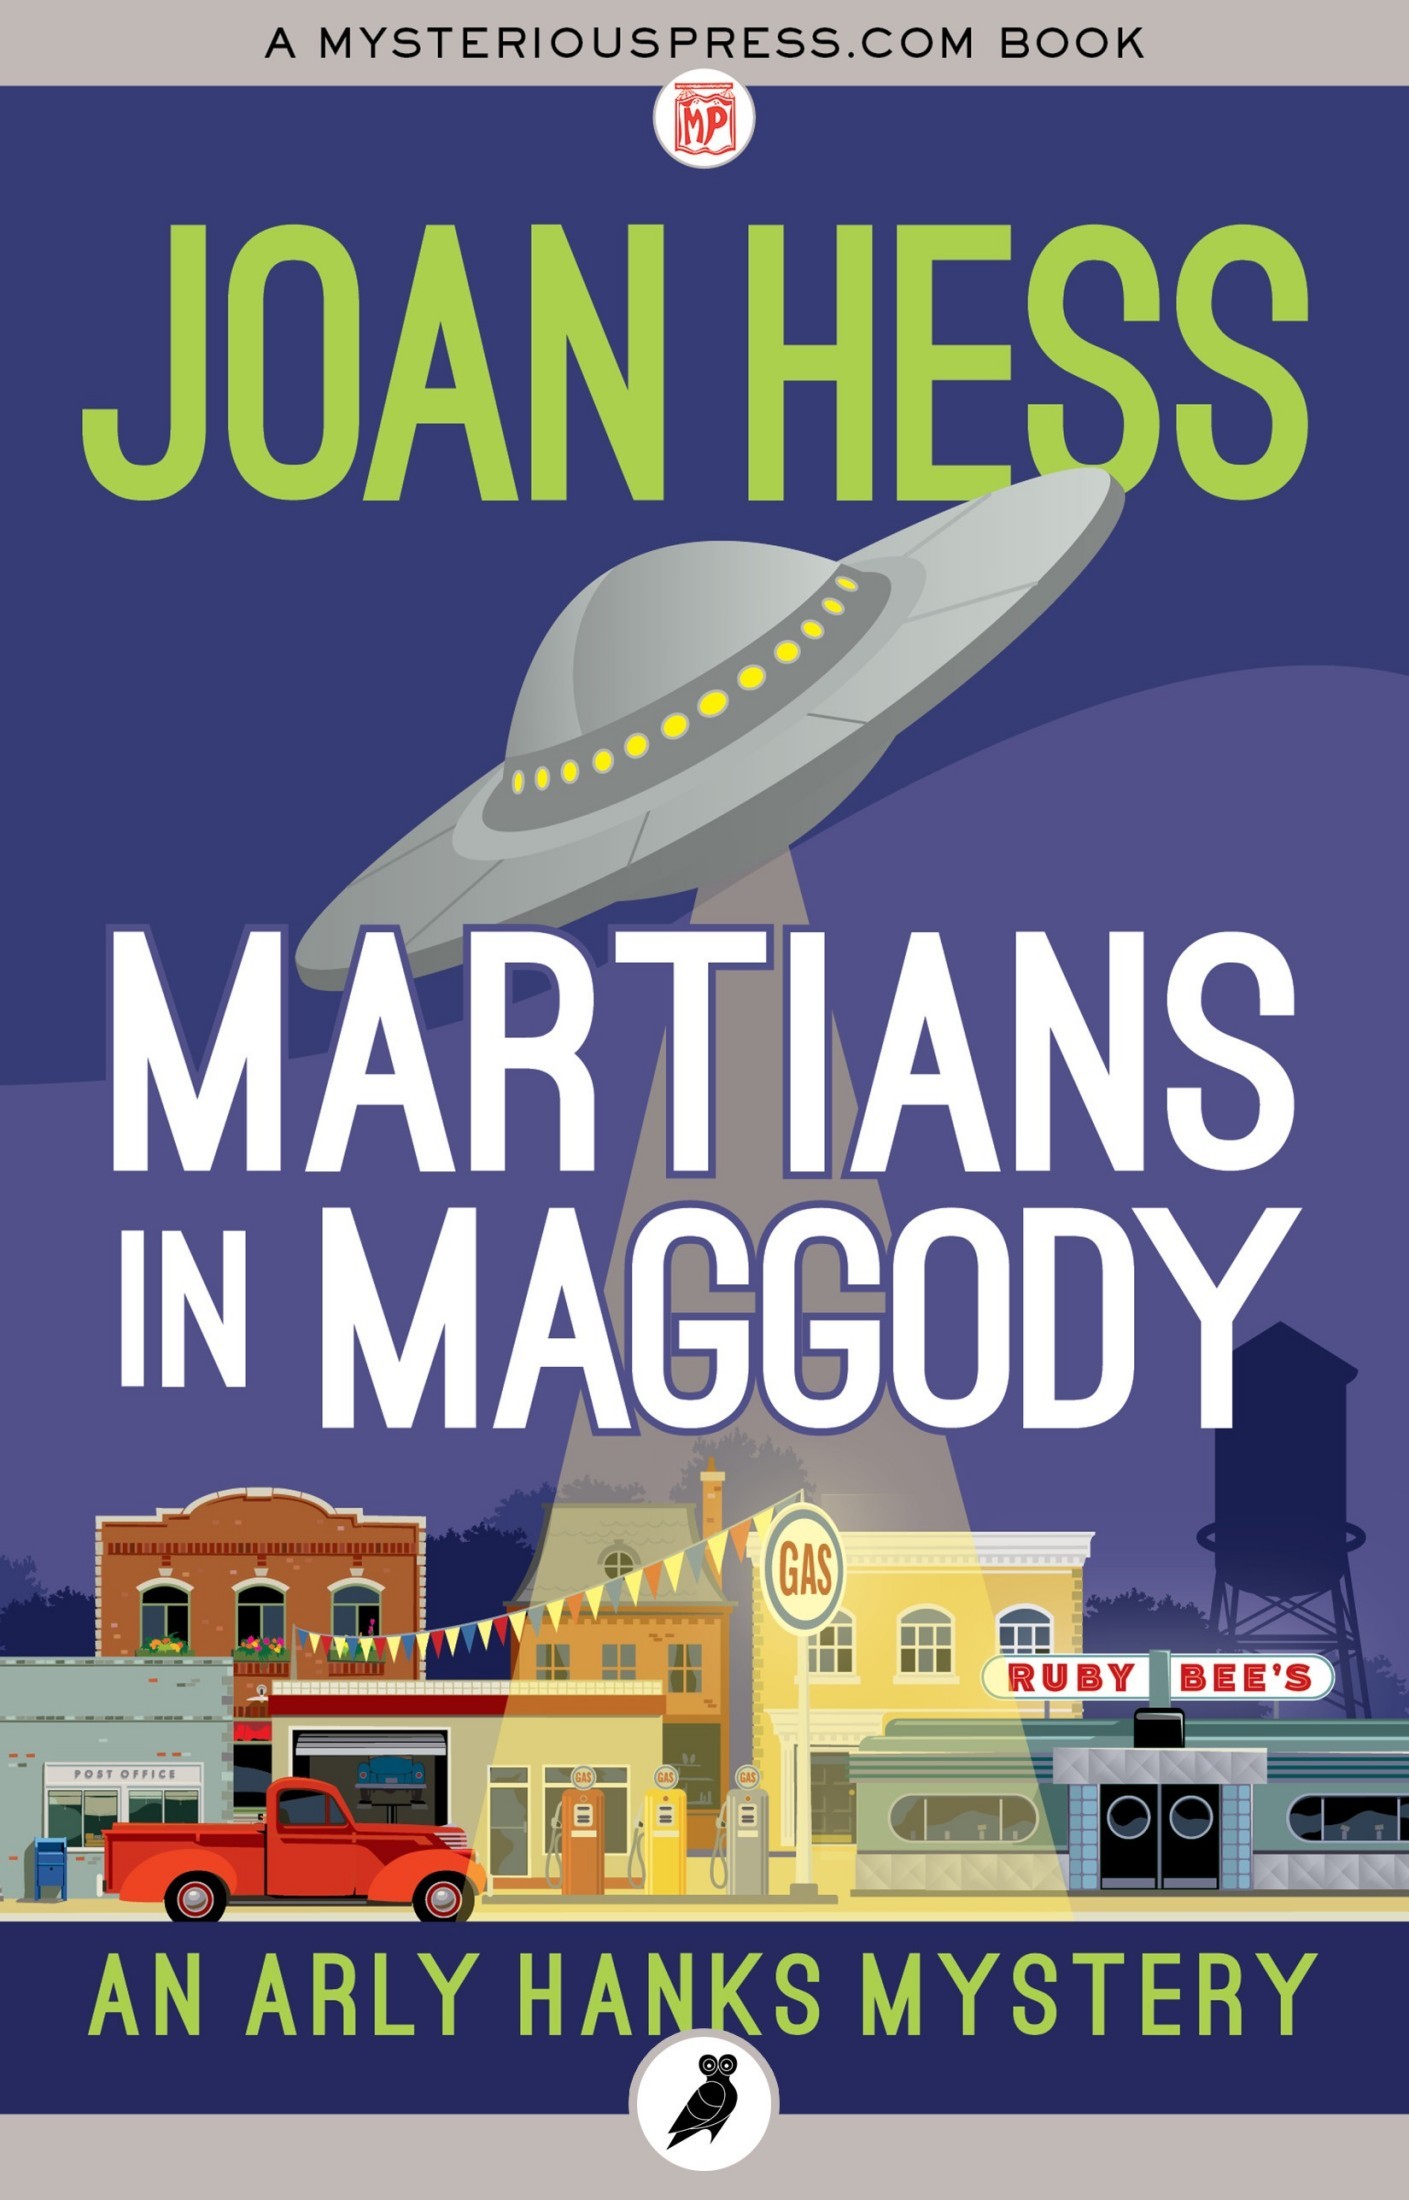 Martians in Maggody